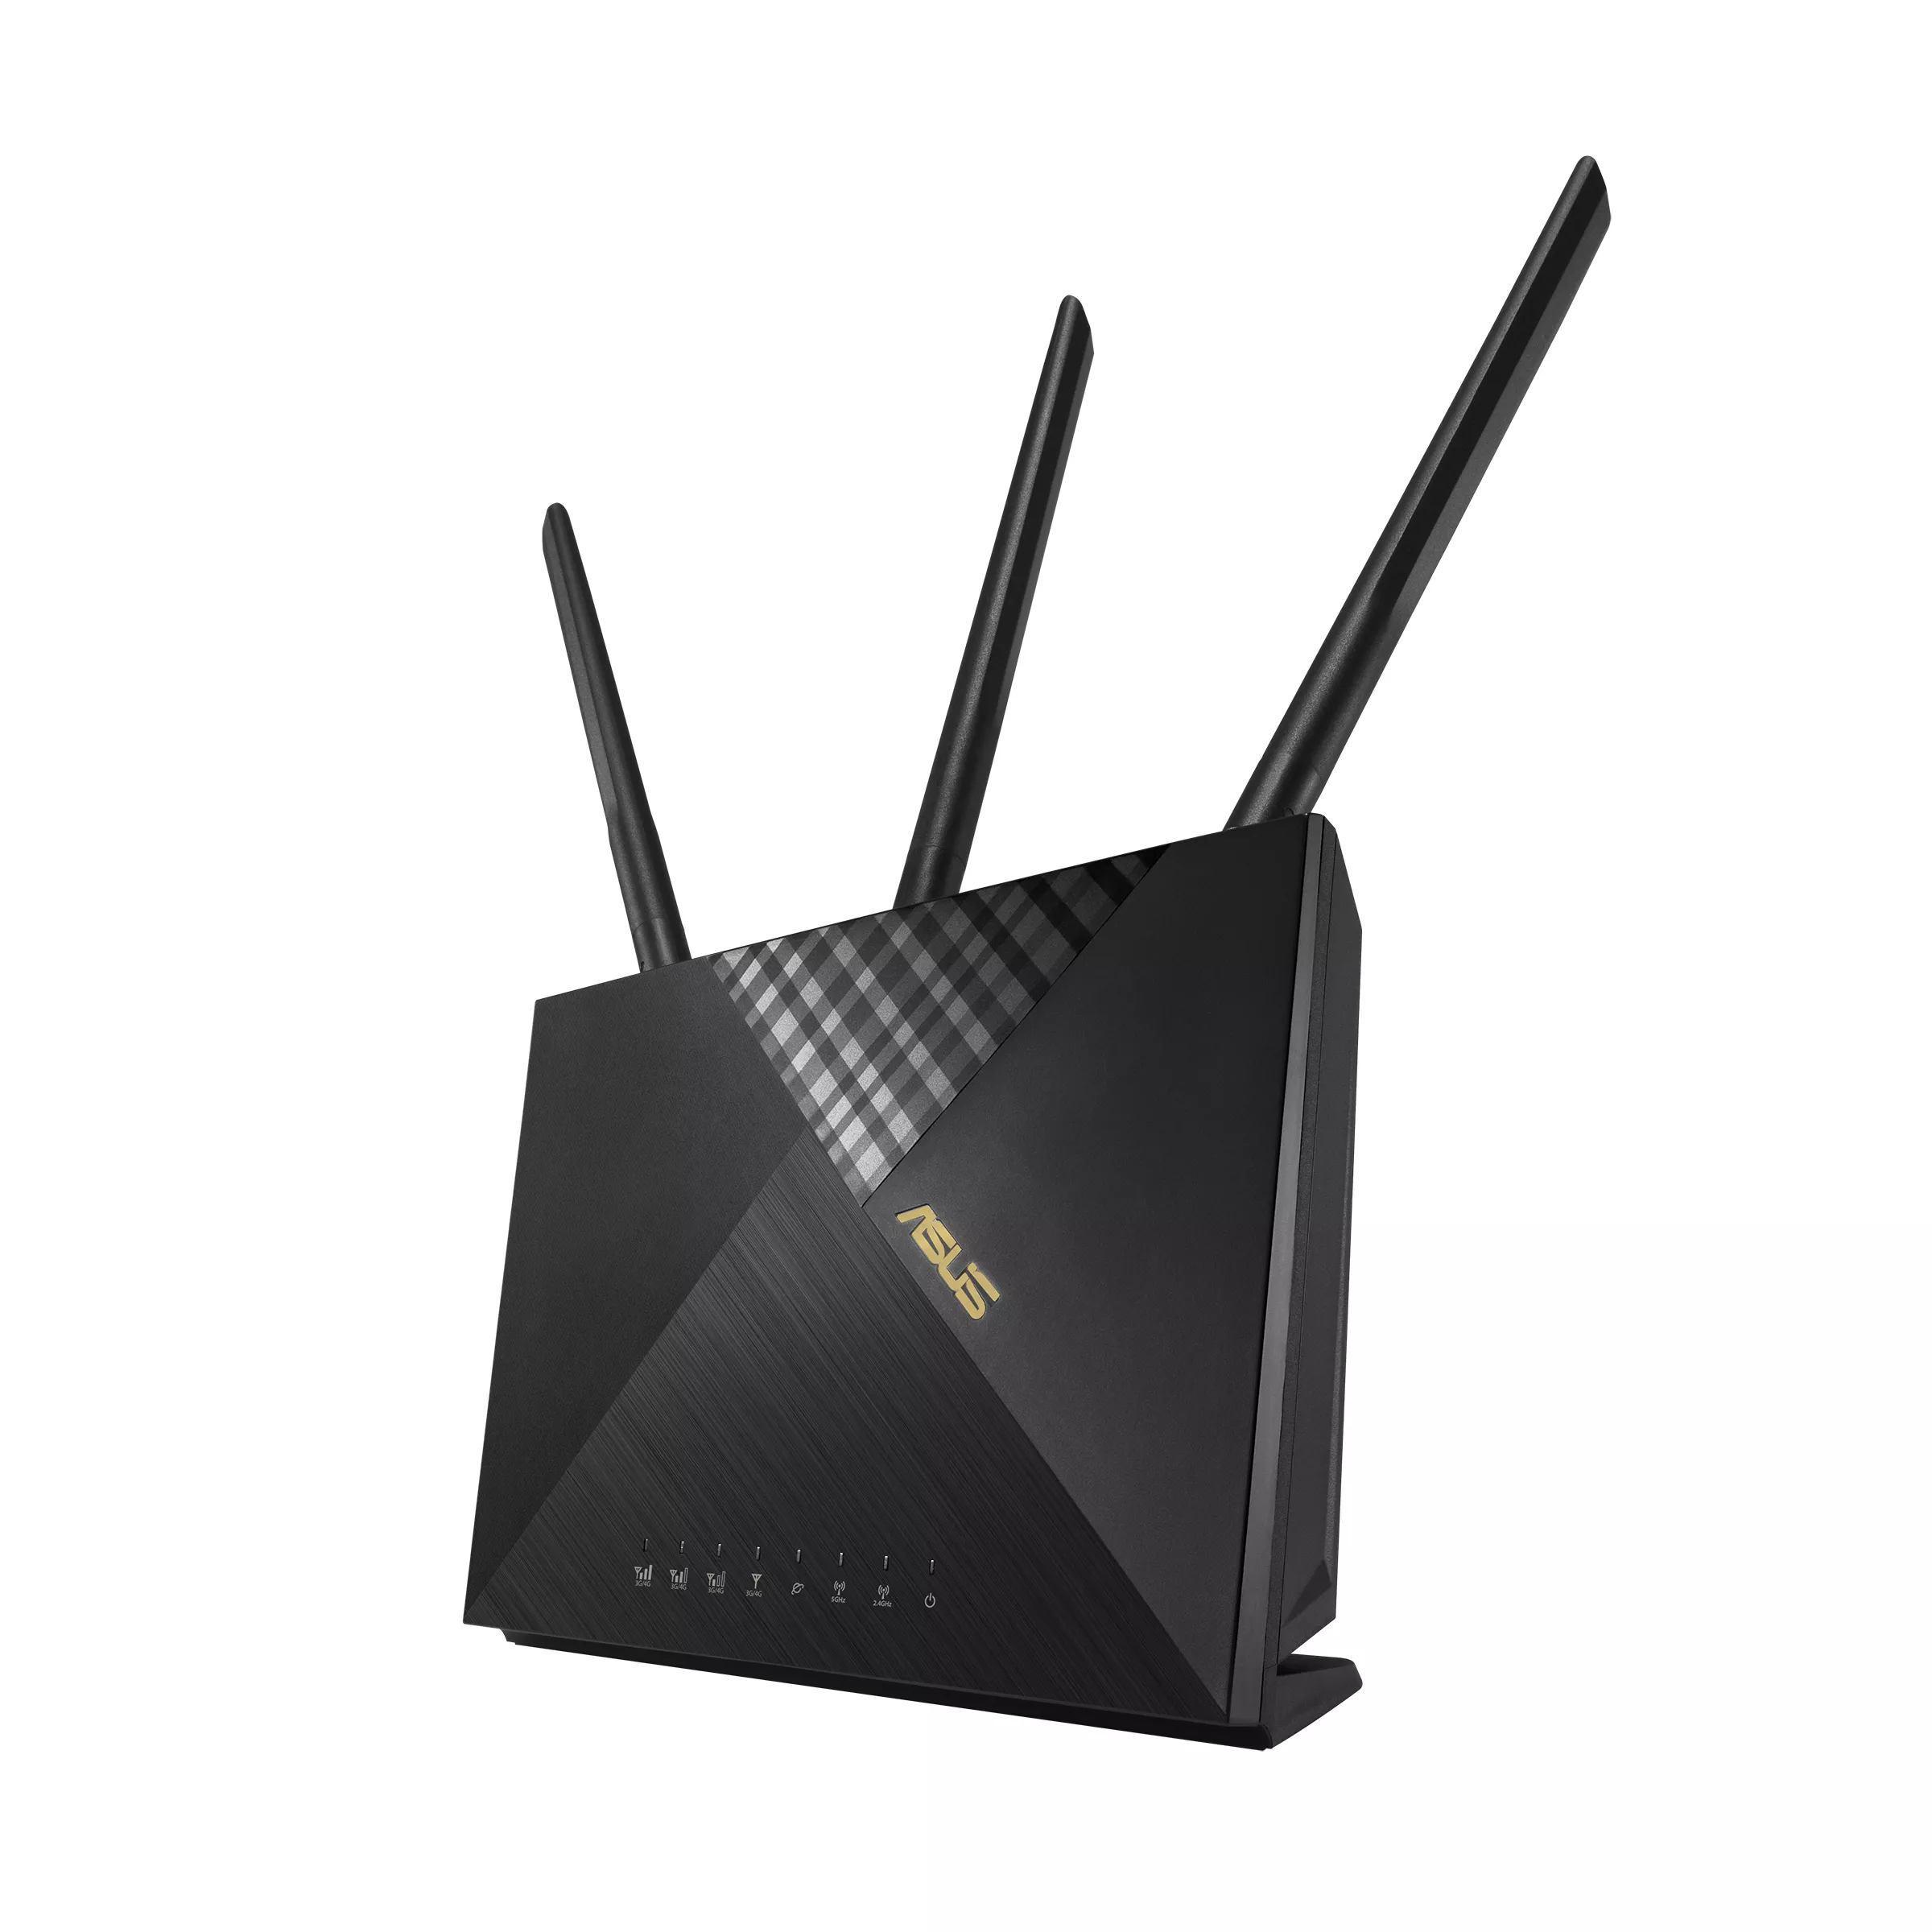 Achat ASUS Wireless-AX1800 Dual-band LTE Modem Router au meilleur prix